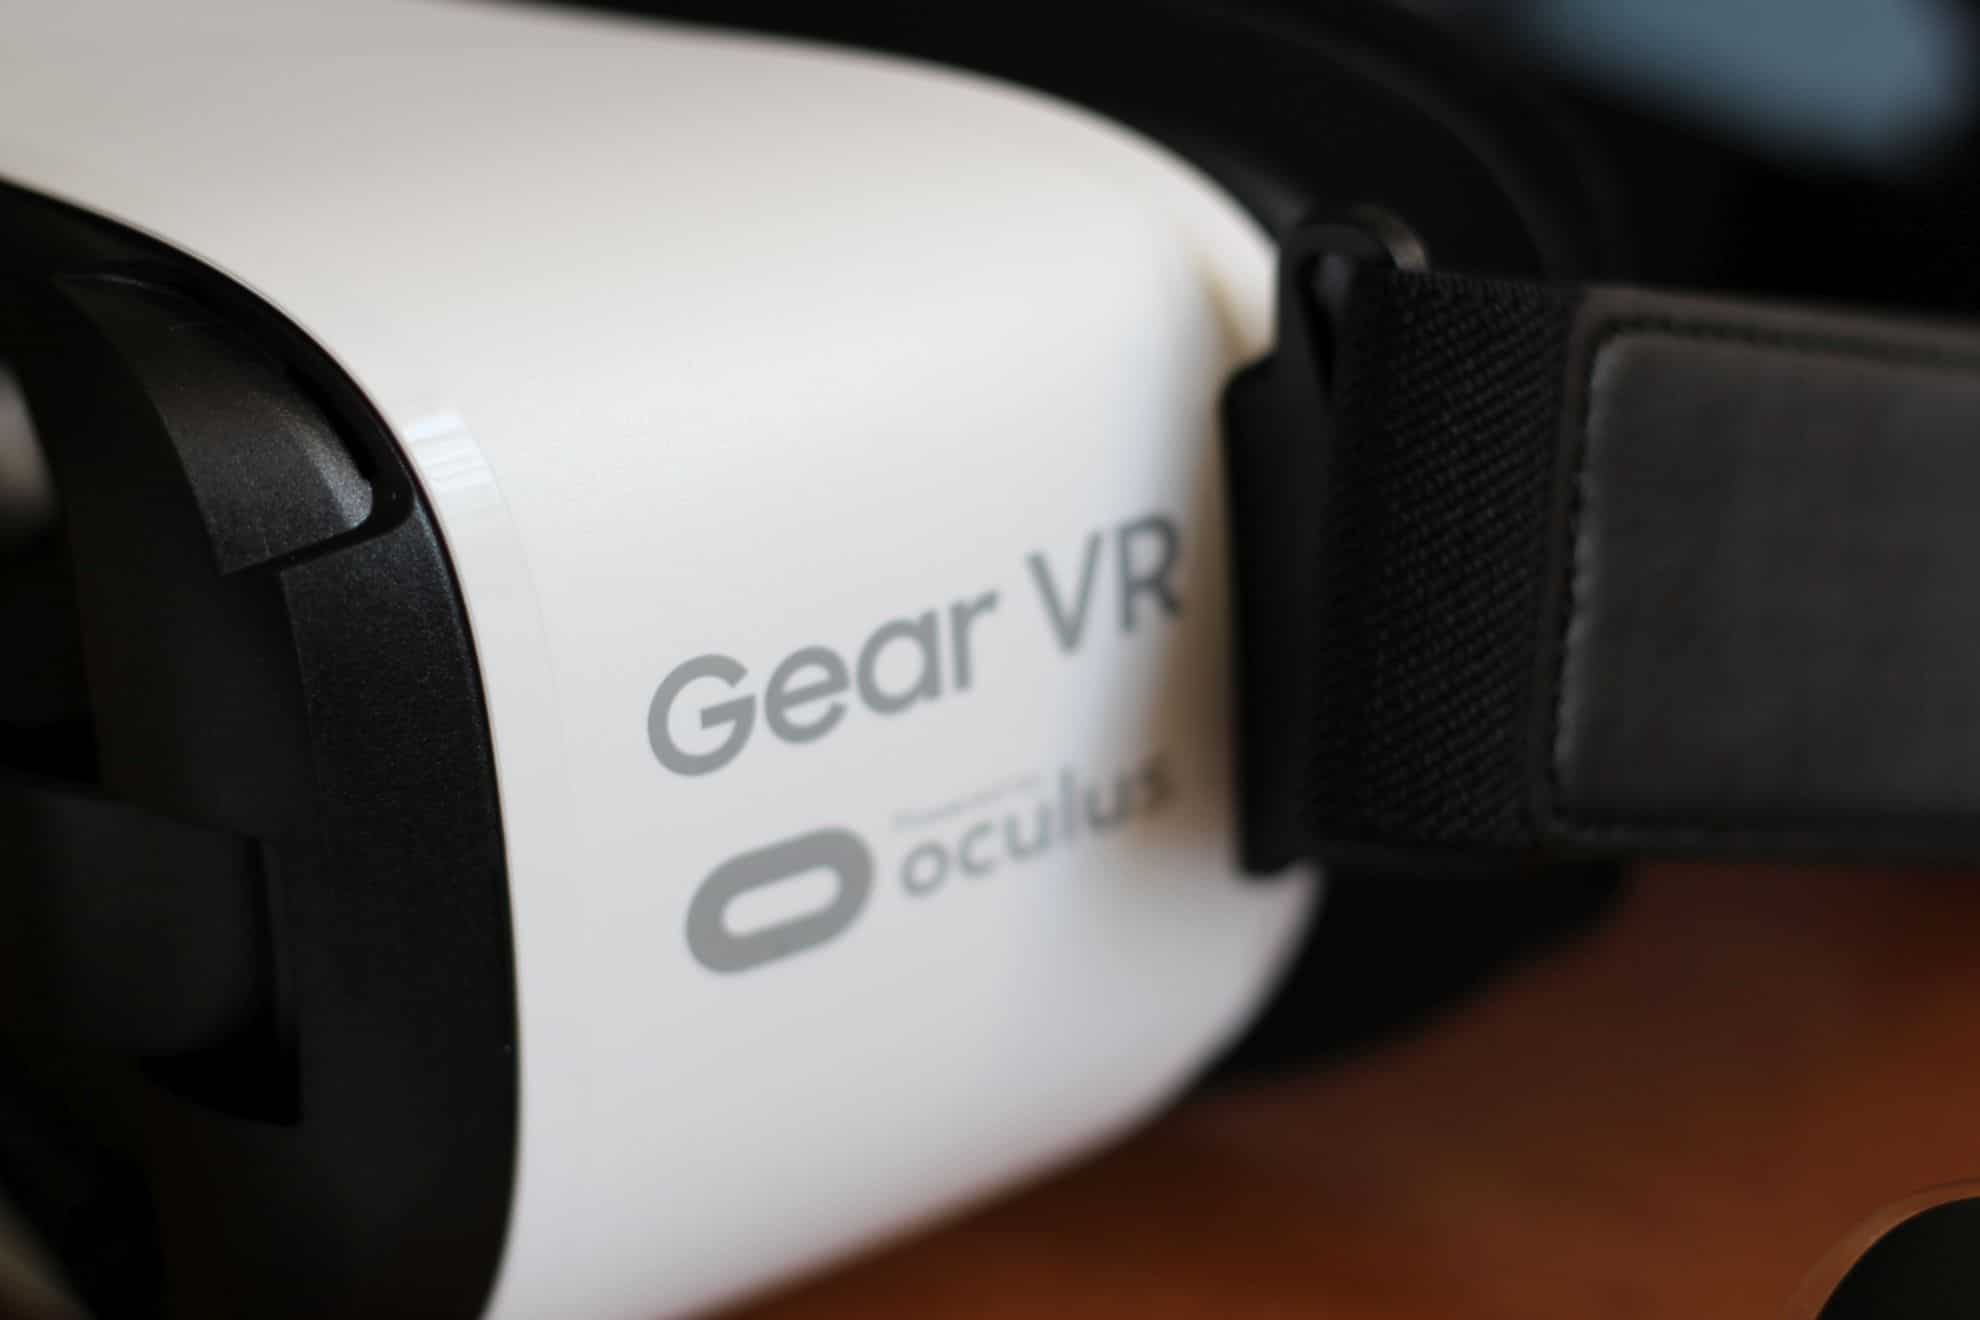 Mehr Apps für Gear VR. (Foto: Sven Wernicke)